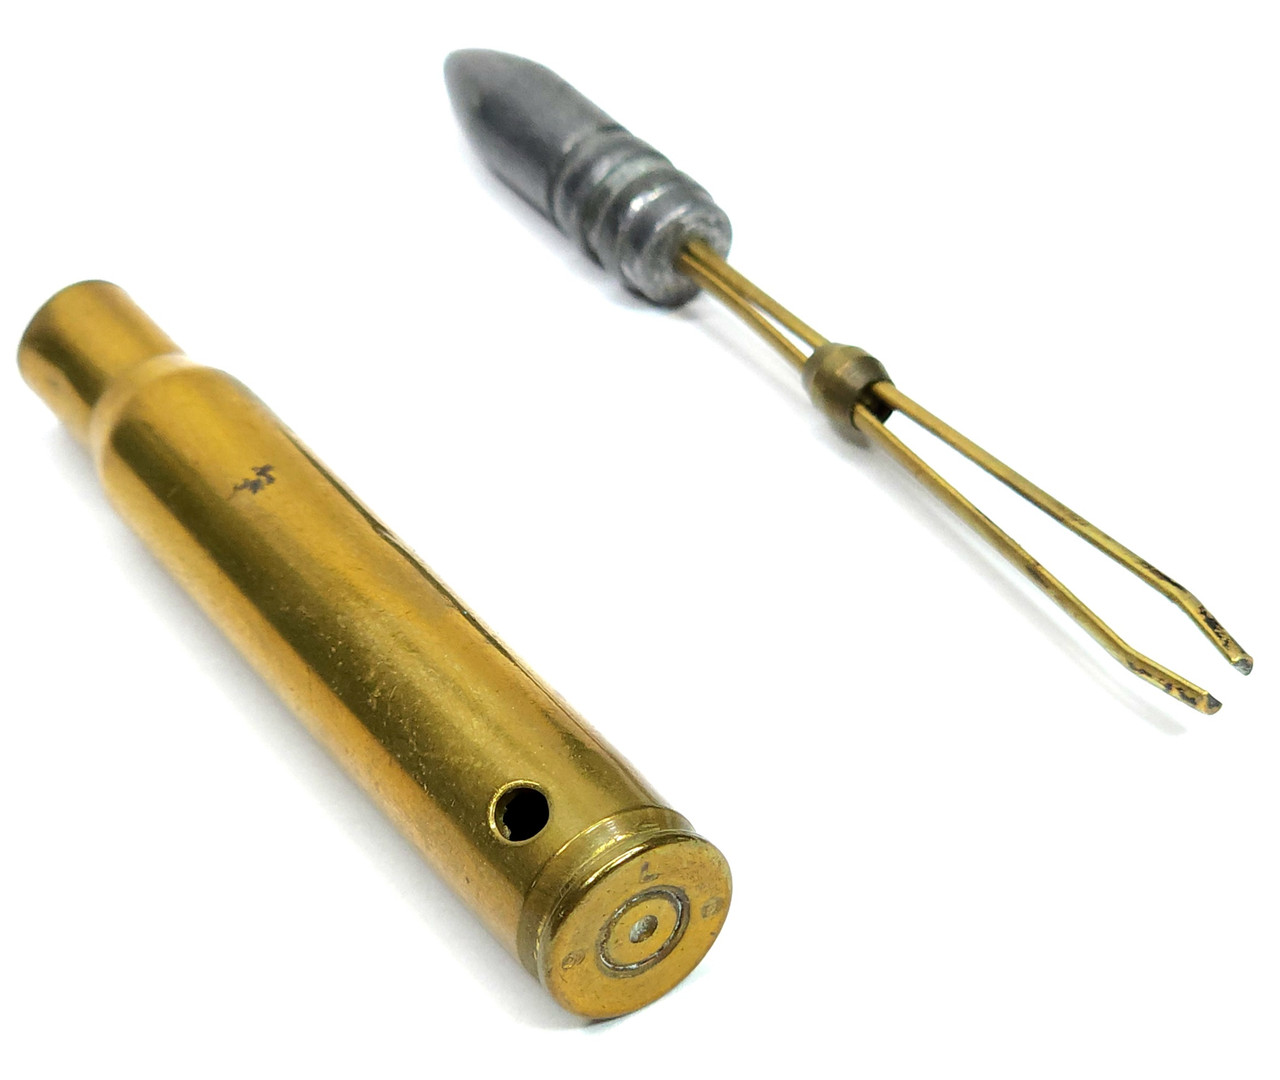 Vintage Handmade Rifle Bullet Gun Shell with Hidden Roach Clip Inside  Tweezers